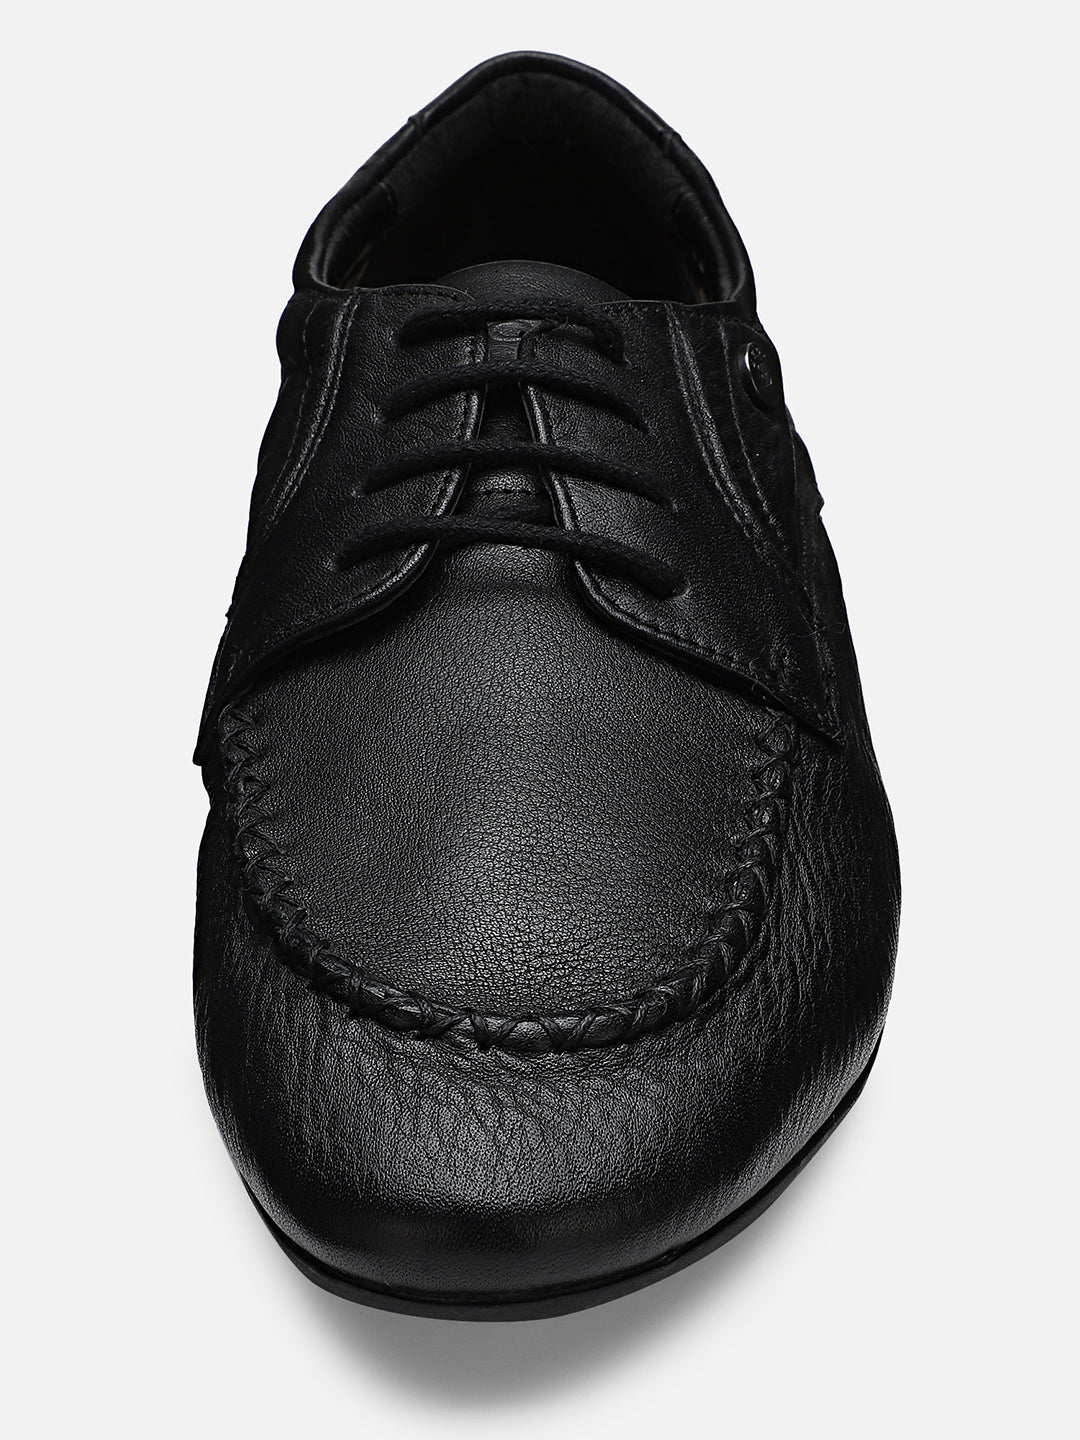 Ezok Men Black Leather Casual Shoes